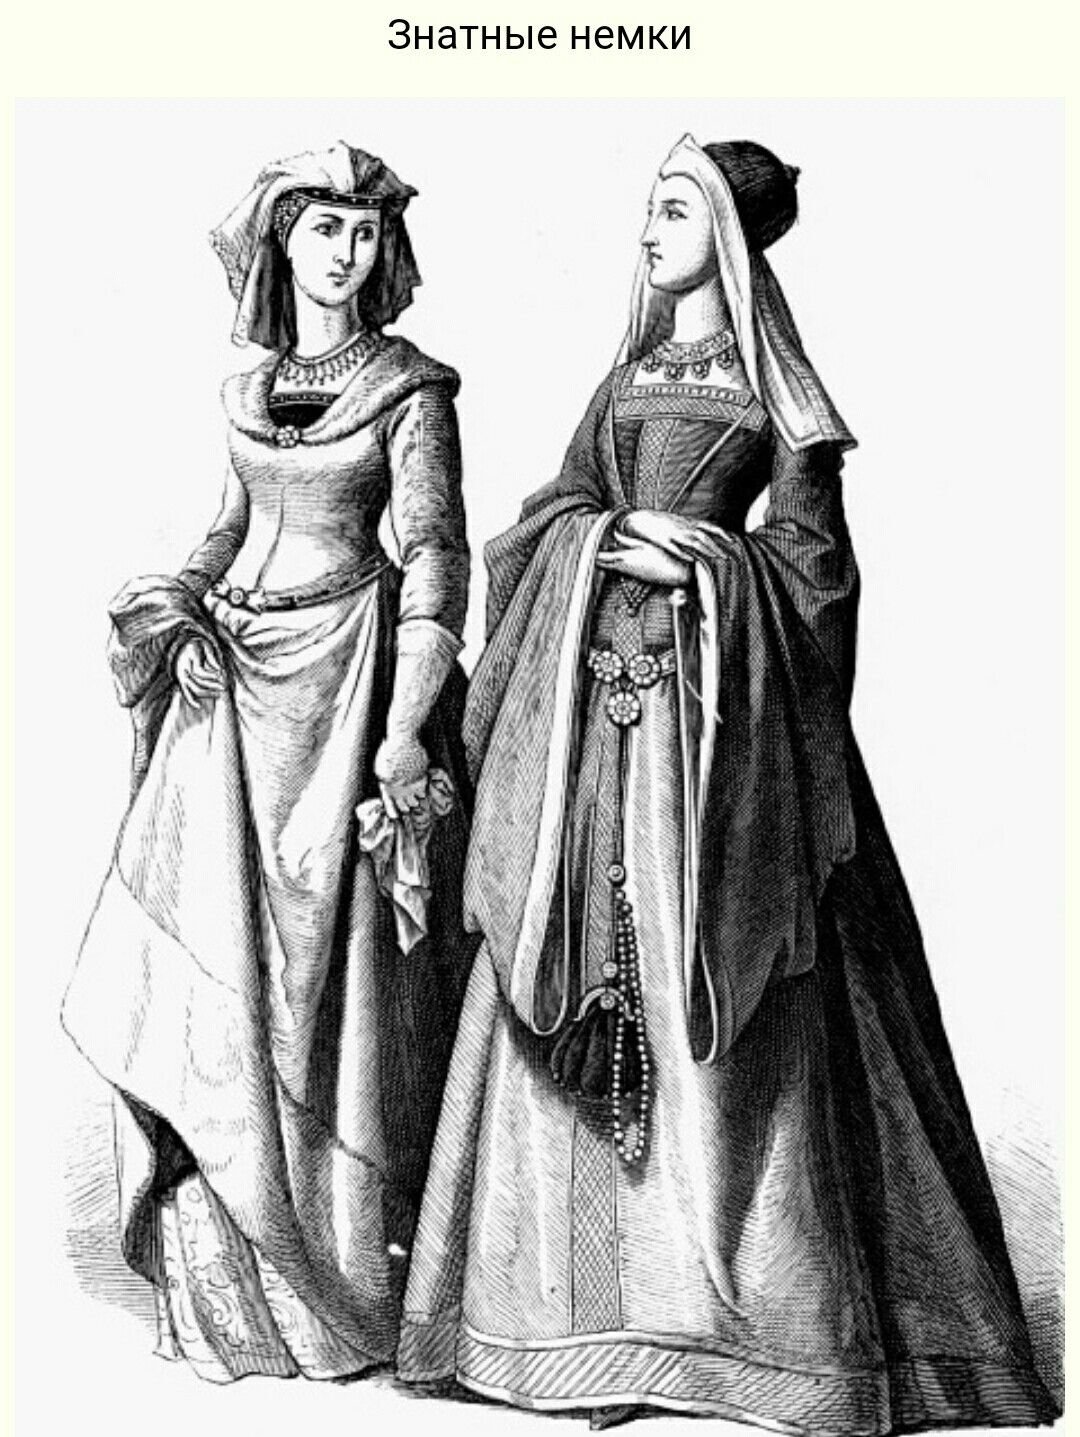 Одежда эпохи средневековья. Костюм готического периода (XIII-XV ВВ.). Одежда средневековья Готика 14 век. Готика одежда средневековья 13-14 век. Готика 14 15 век одежда.